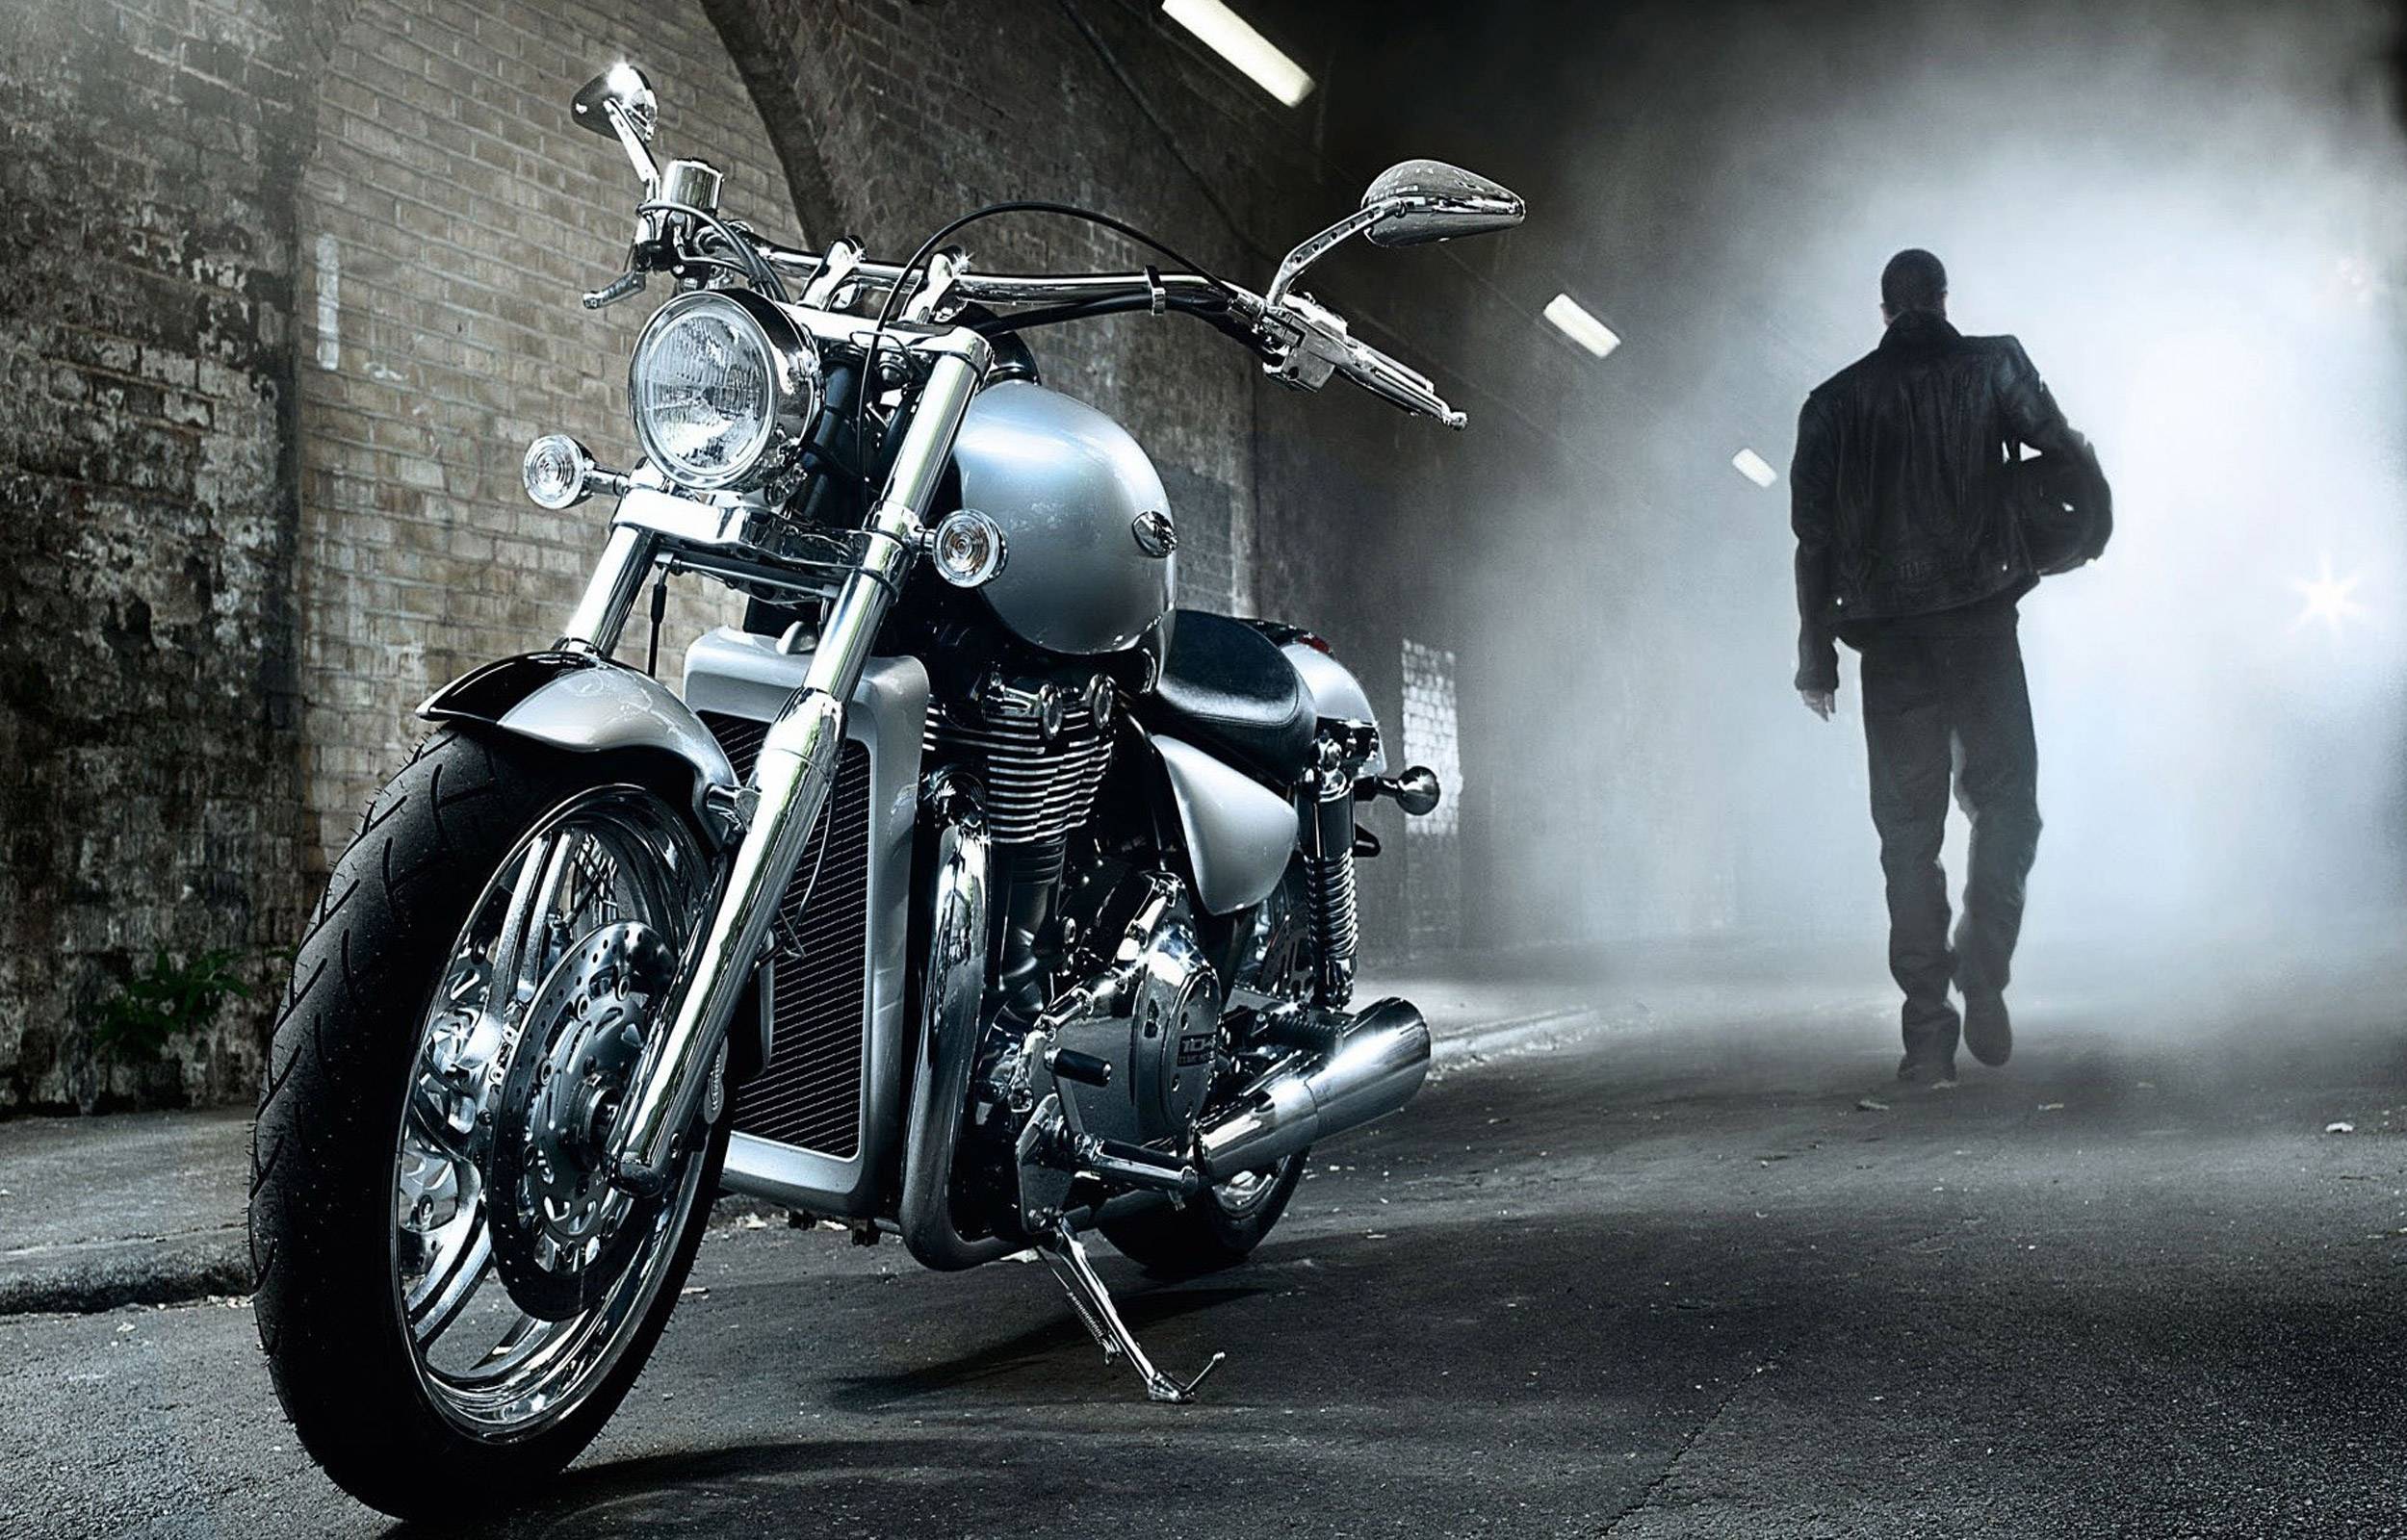 Harley Davidson Wallpaper Free Download